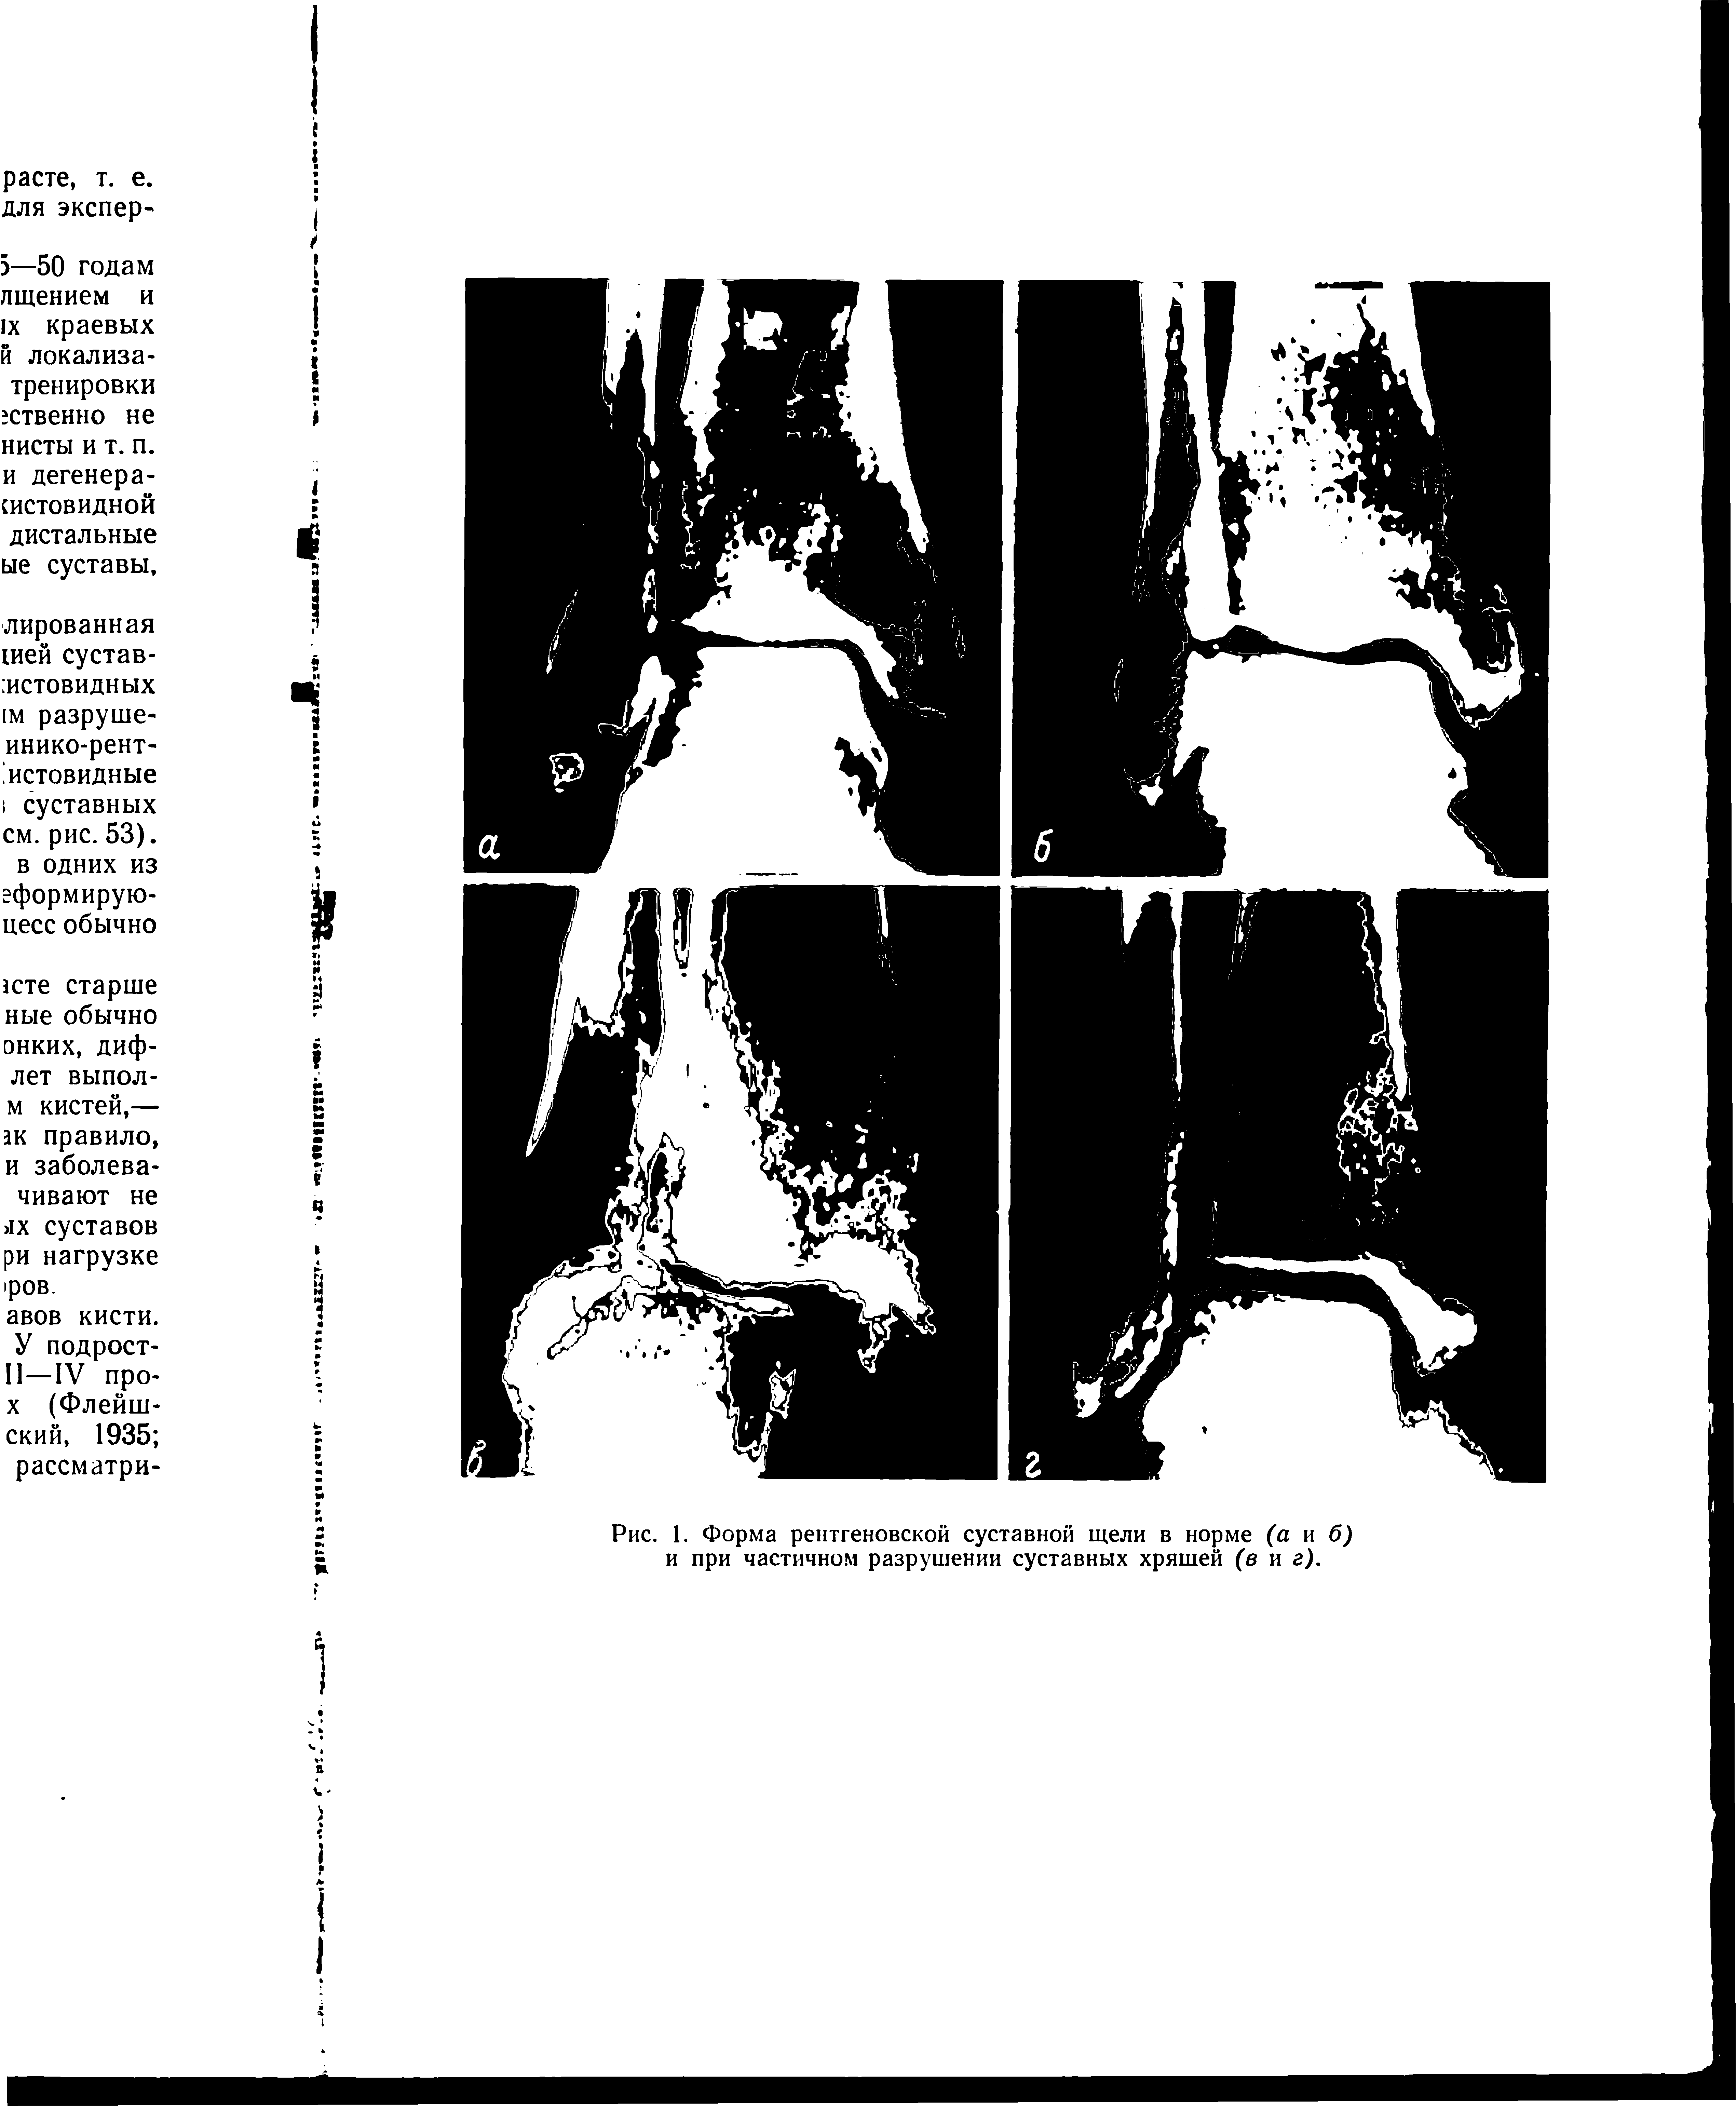 Рис. 1. Форма рентгеновской суставной щели в норме (а и б) и при частичном разрушении суставных хряшей (в и г).